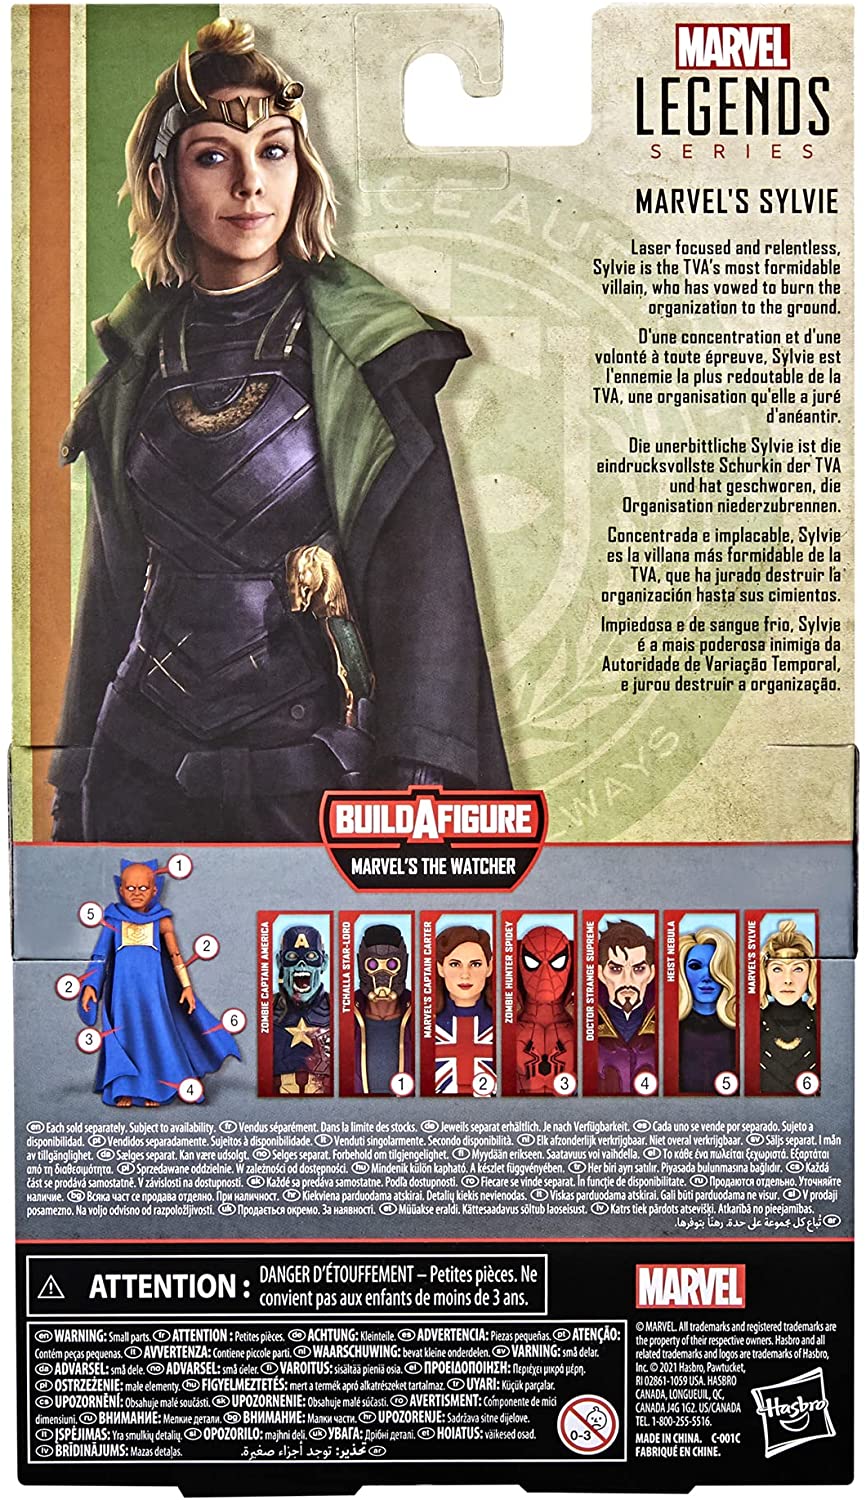 Marvel Legends Series 15 cm großes Actionfiguren-Spielzeug Marvels Sylvie, Premium-Design, 1 Figur, 3 Zubehörteile und 1 Build-a-Figure-Teil, mehrfarbig